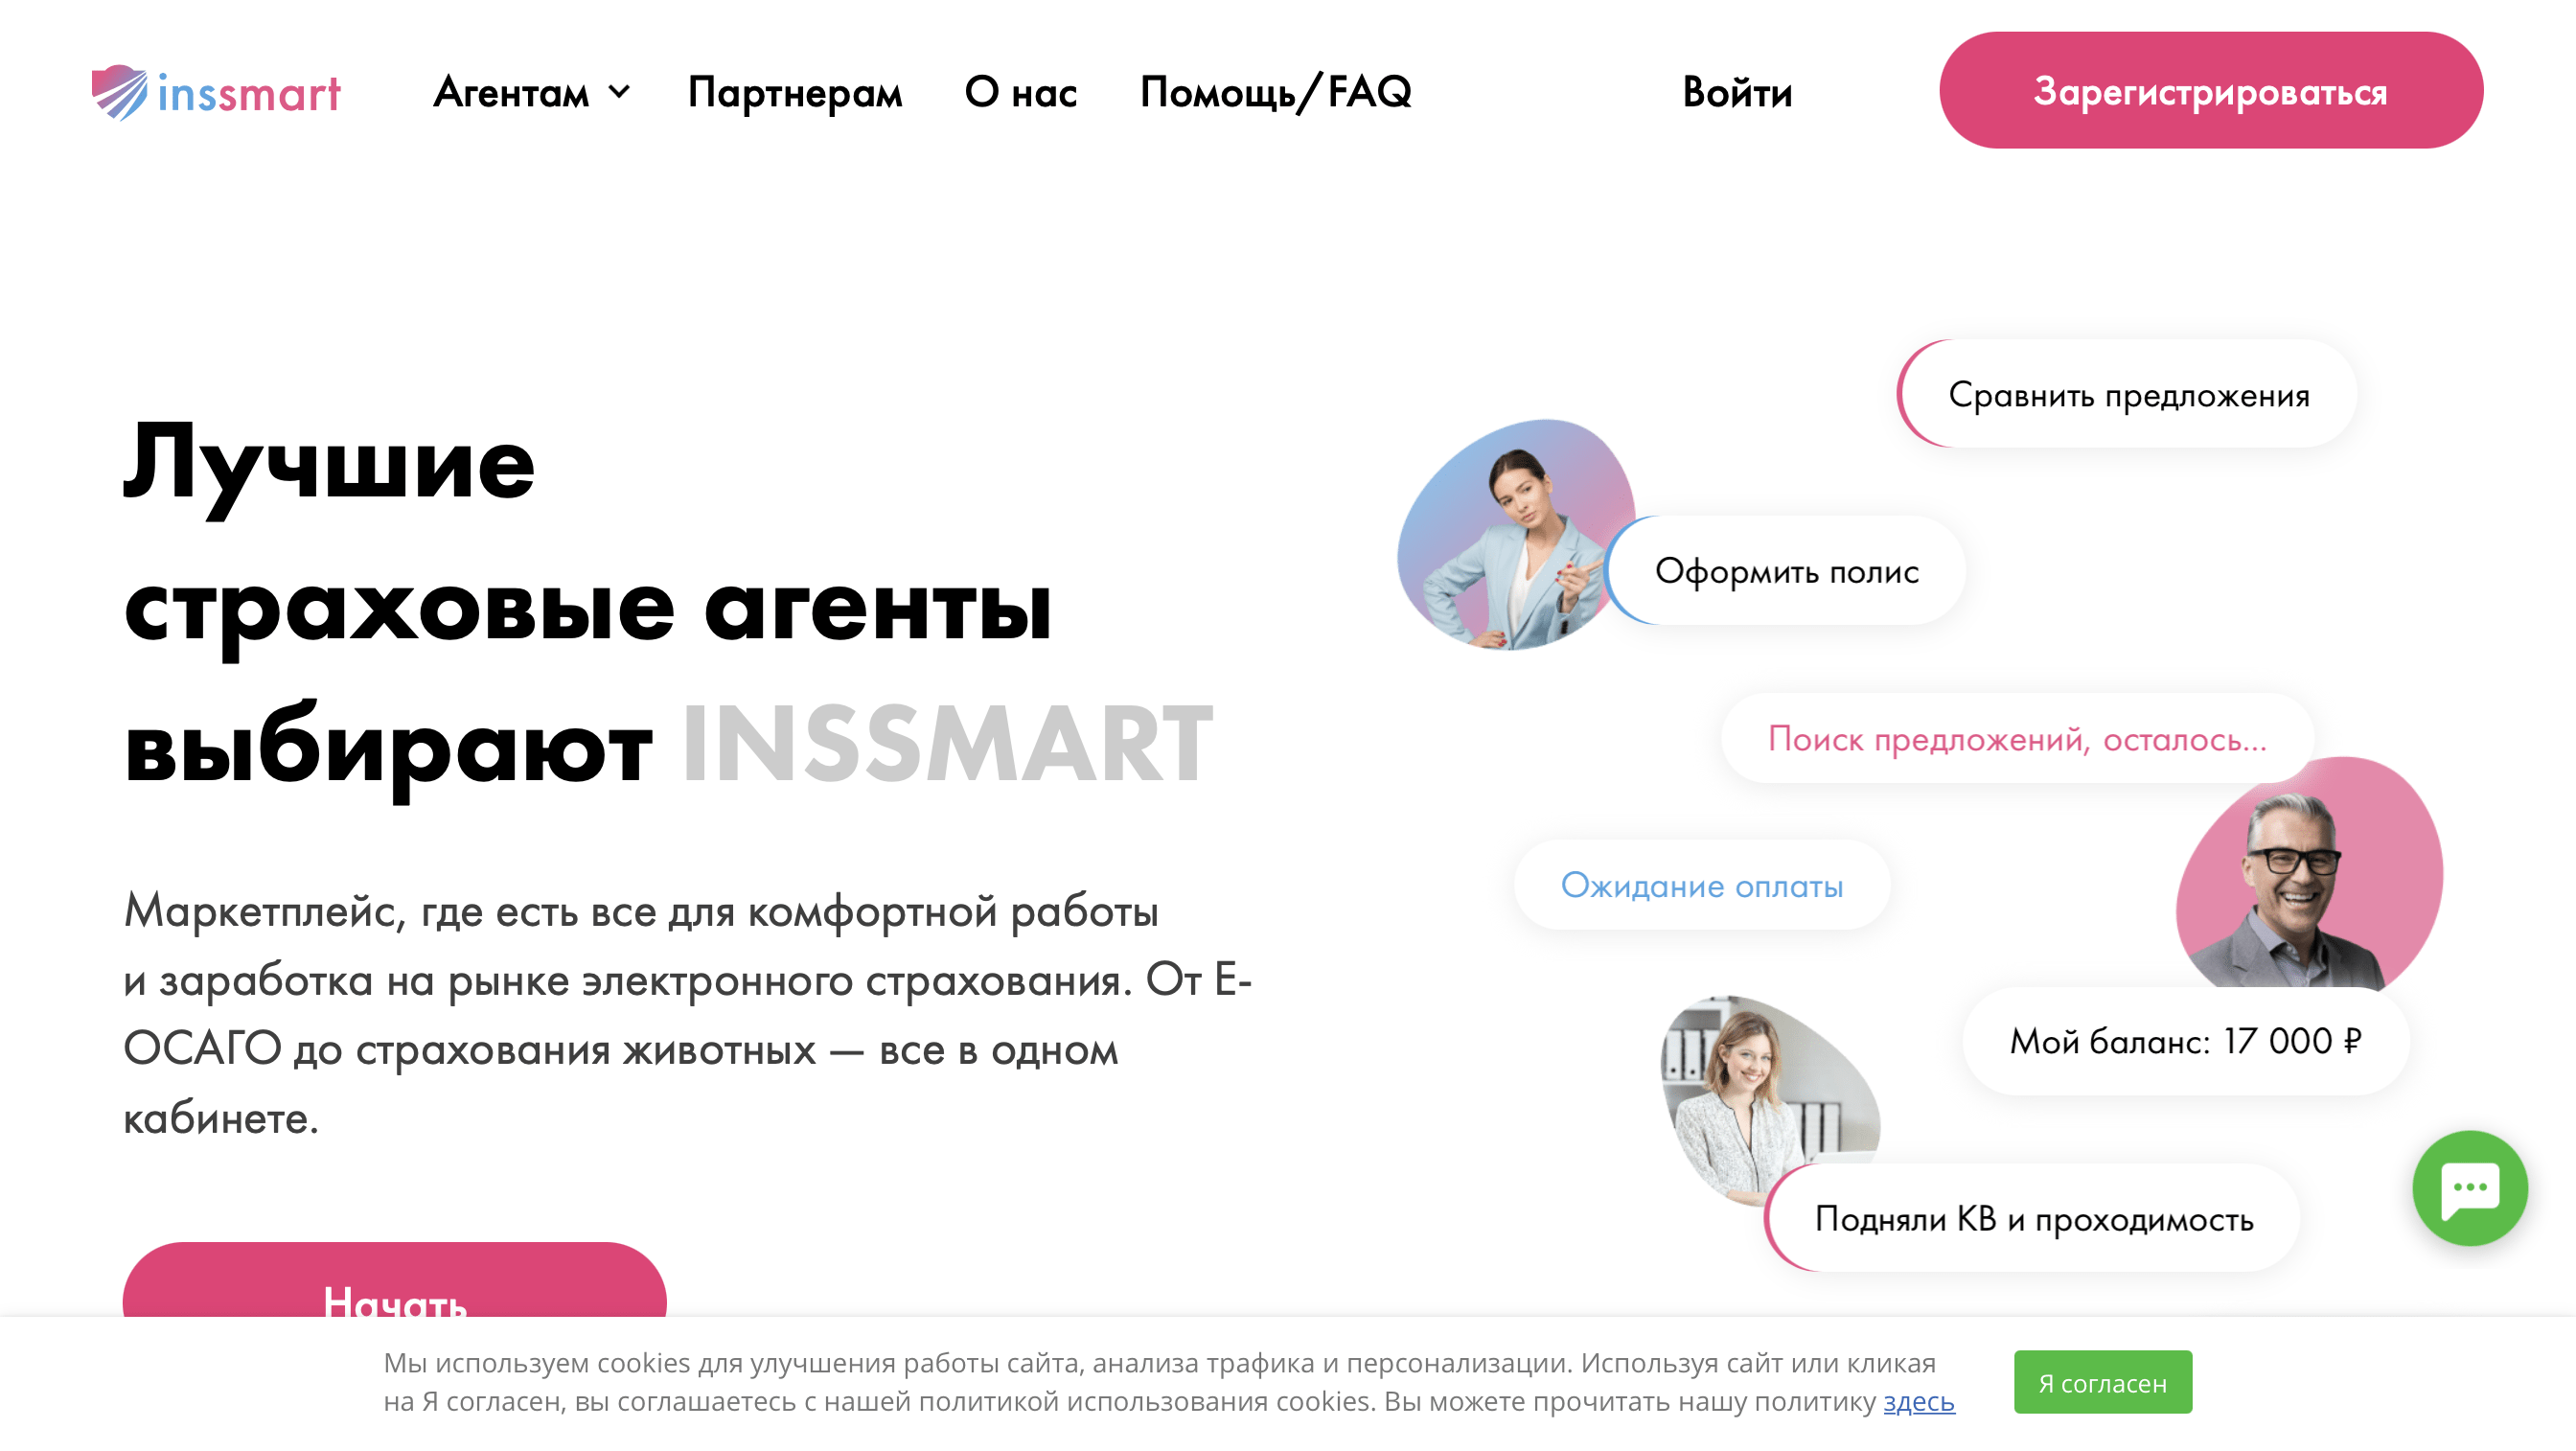 INSSMART – маркетплейс для эффективной работы и заработка в сфере электронного страхования